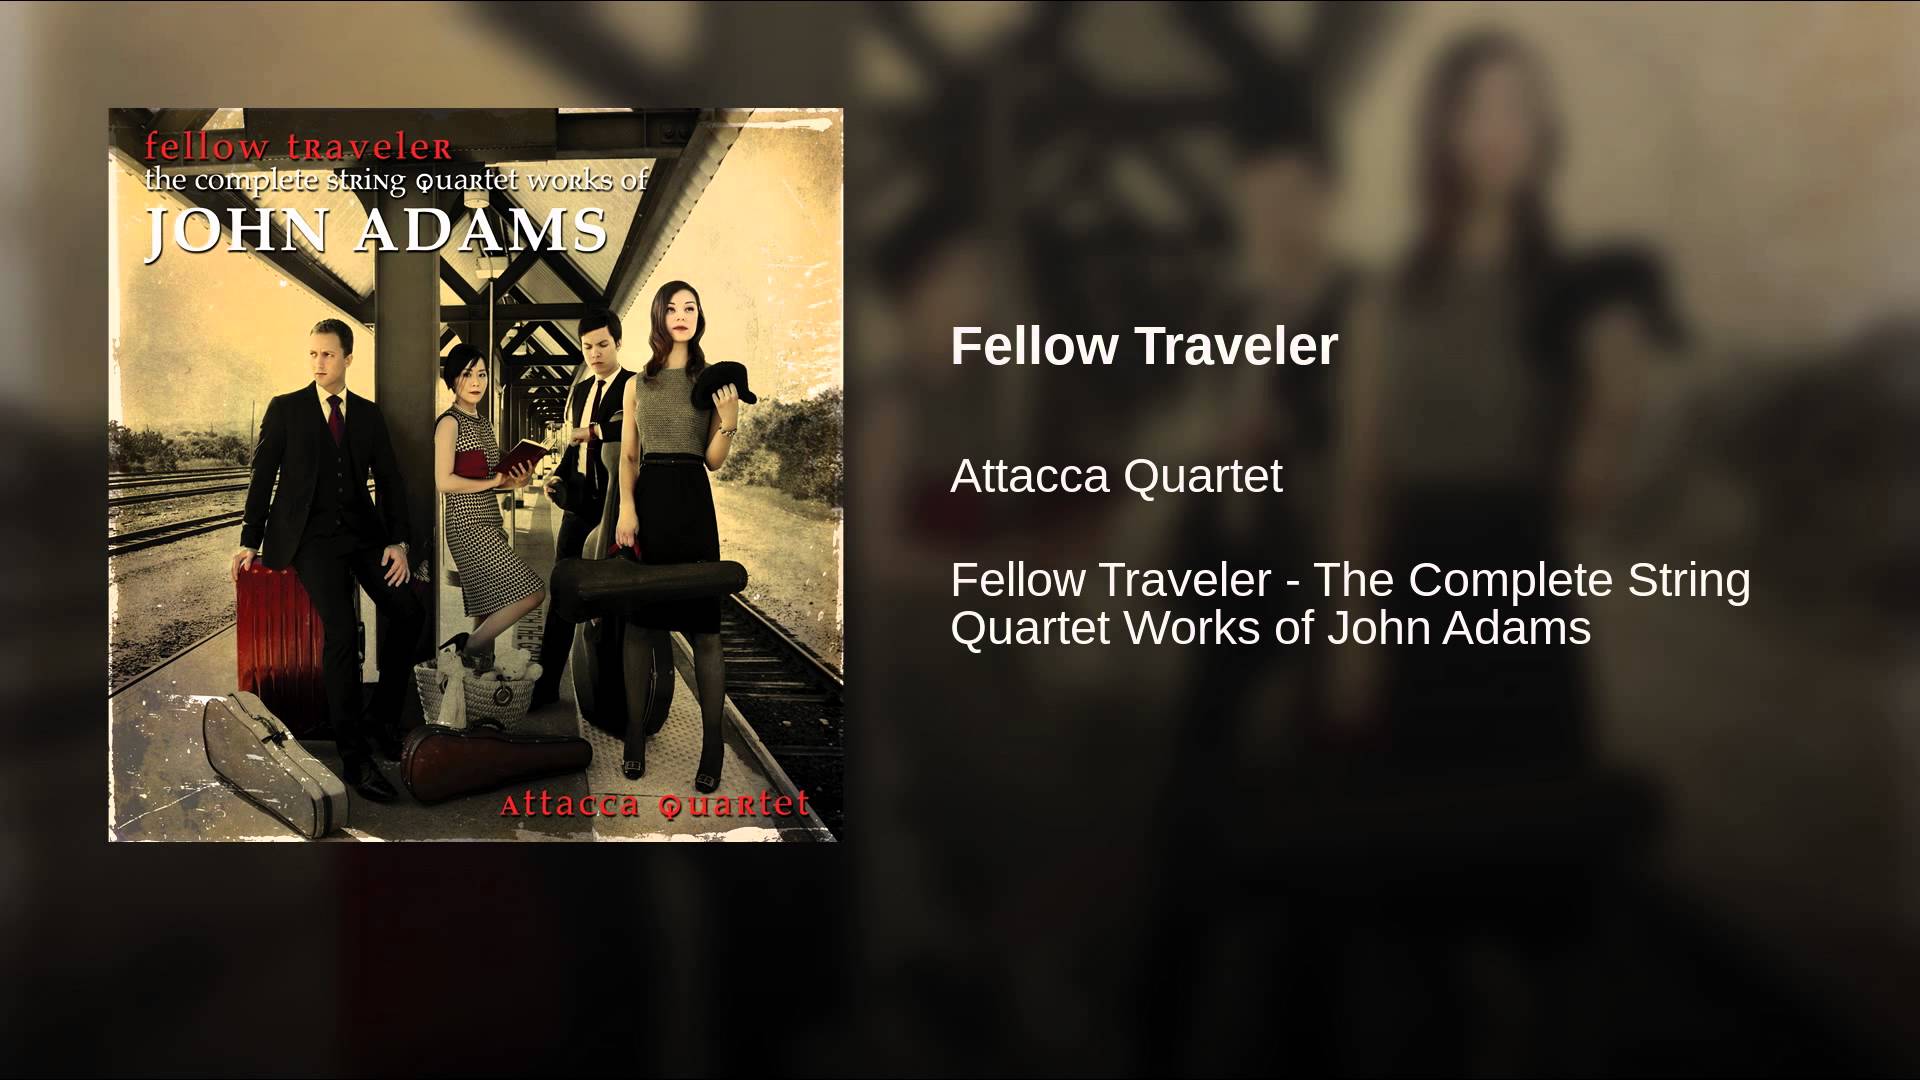 Fellow Traveler - YouTube